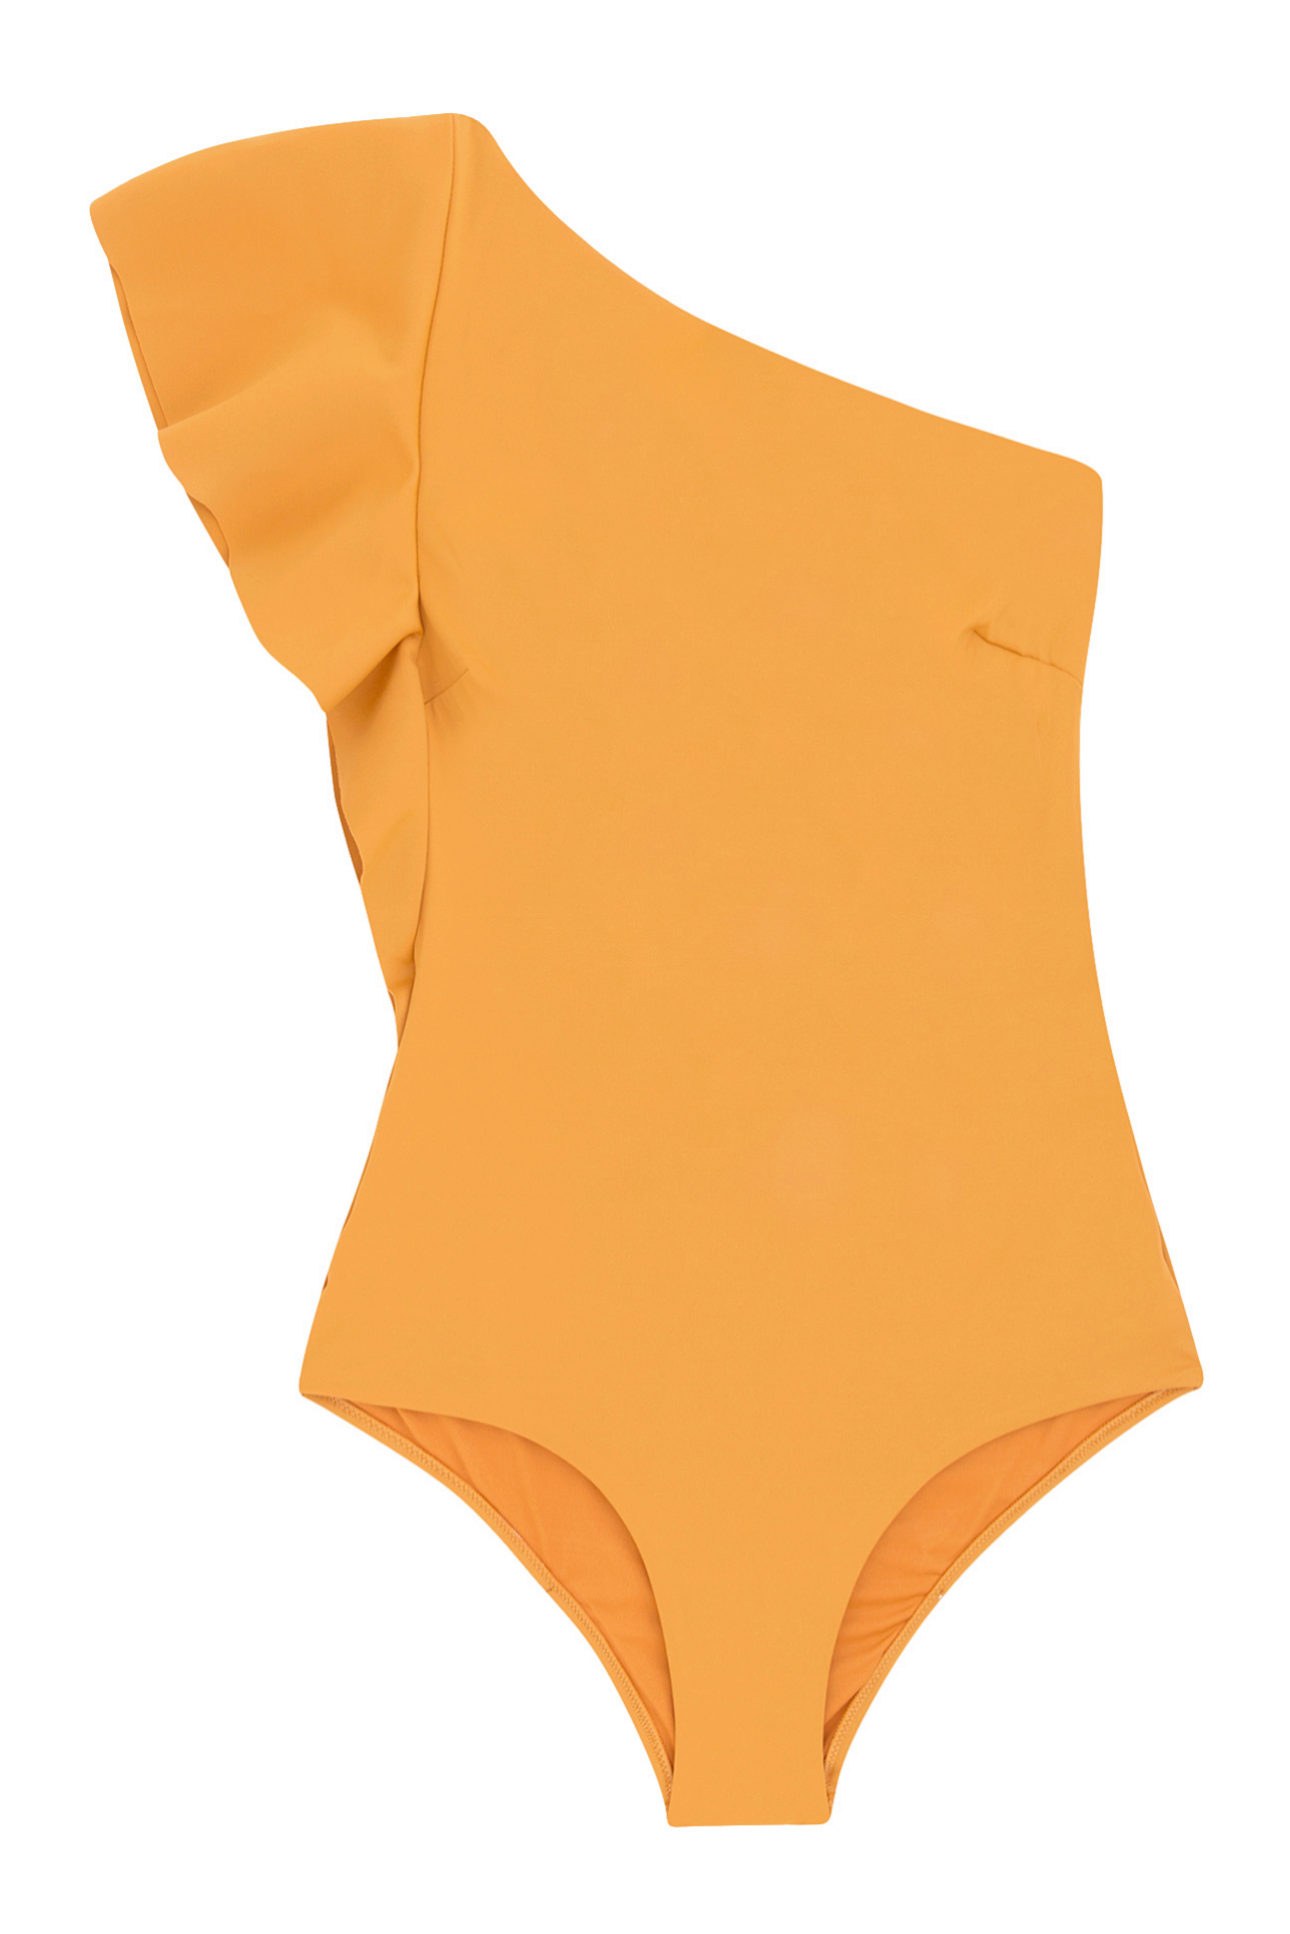 Traje de baño asimétrico con volante en color naranja de Oysho (28,79¤)